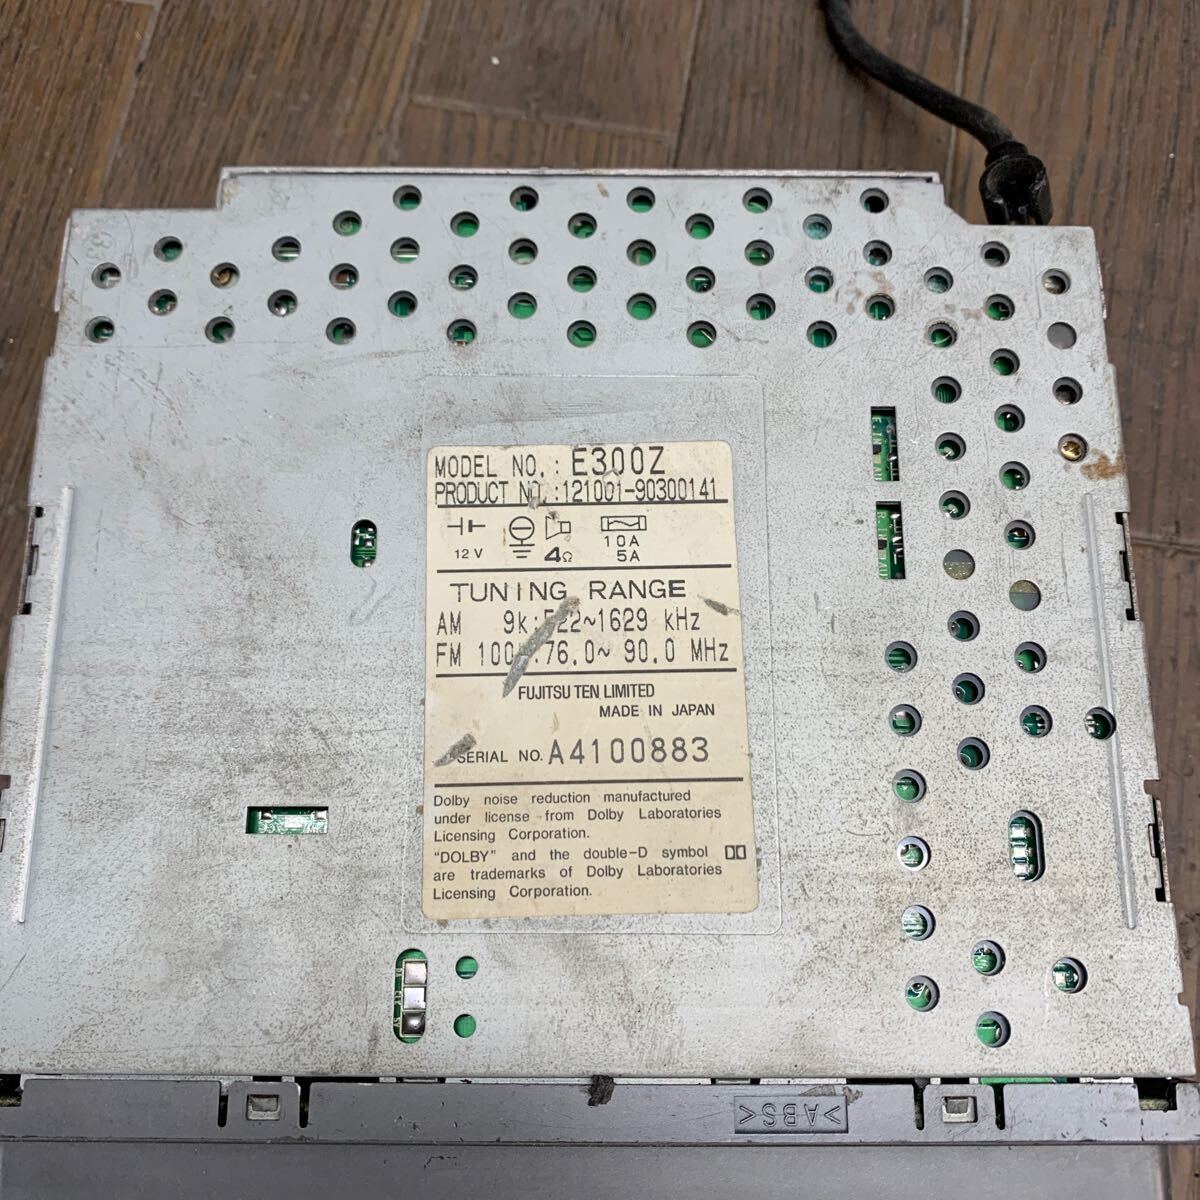 AV5-270 激安 カーステレオ テープデッキ ECLIPSE E300Z 121001-90300141 カセット FM/AM 本体のみ 簡易動作確認済み 中古現状品_汚れあり